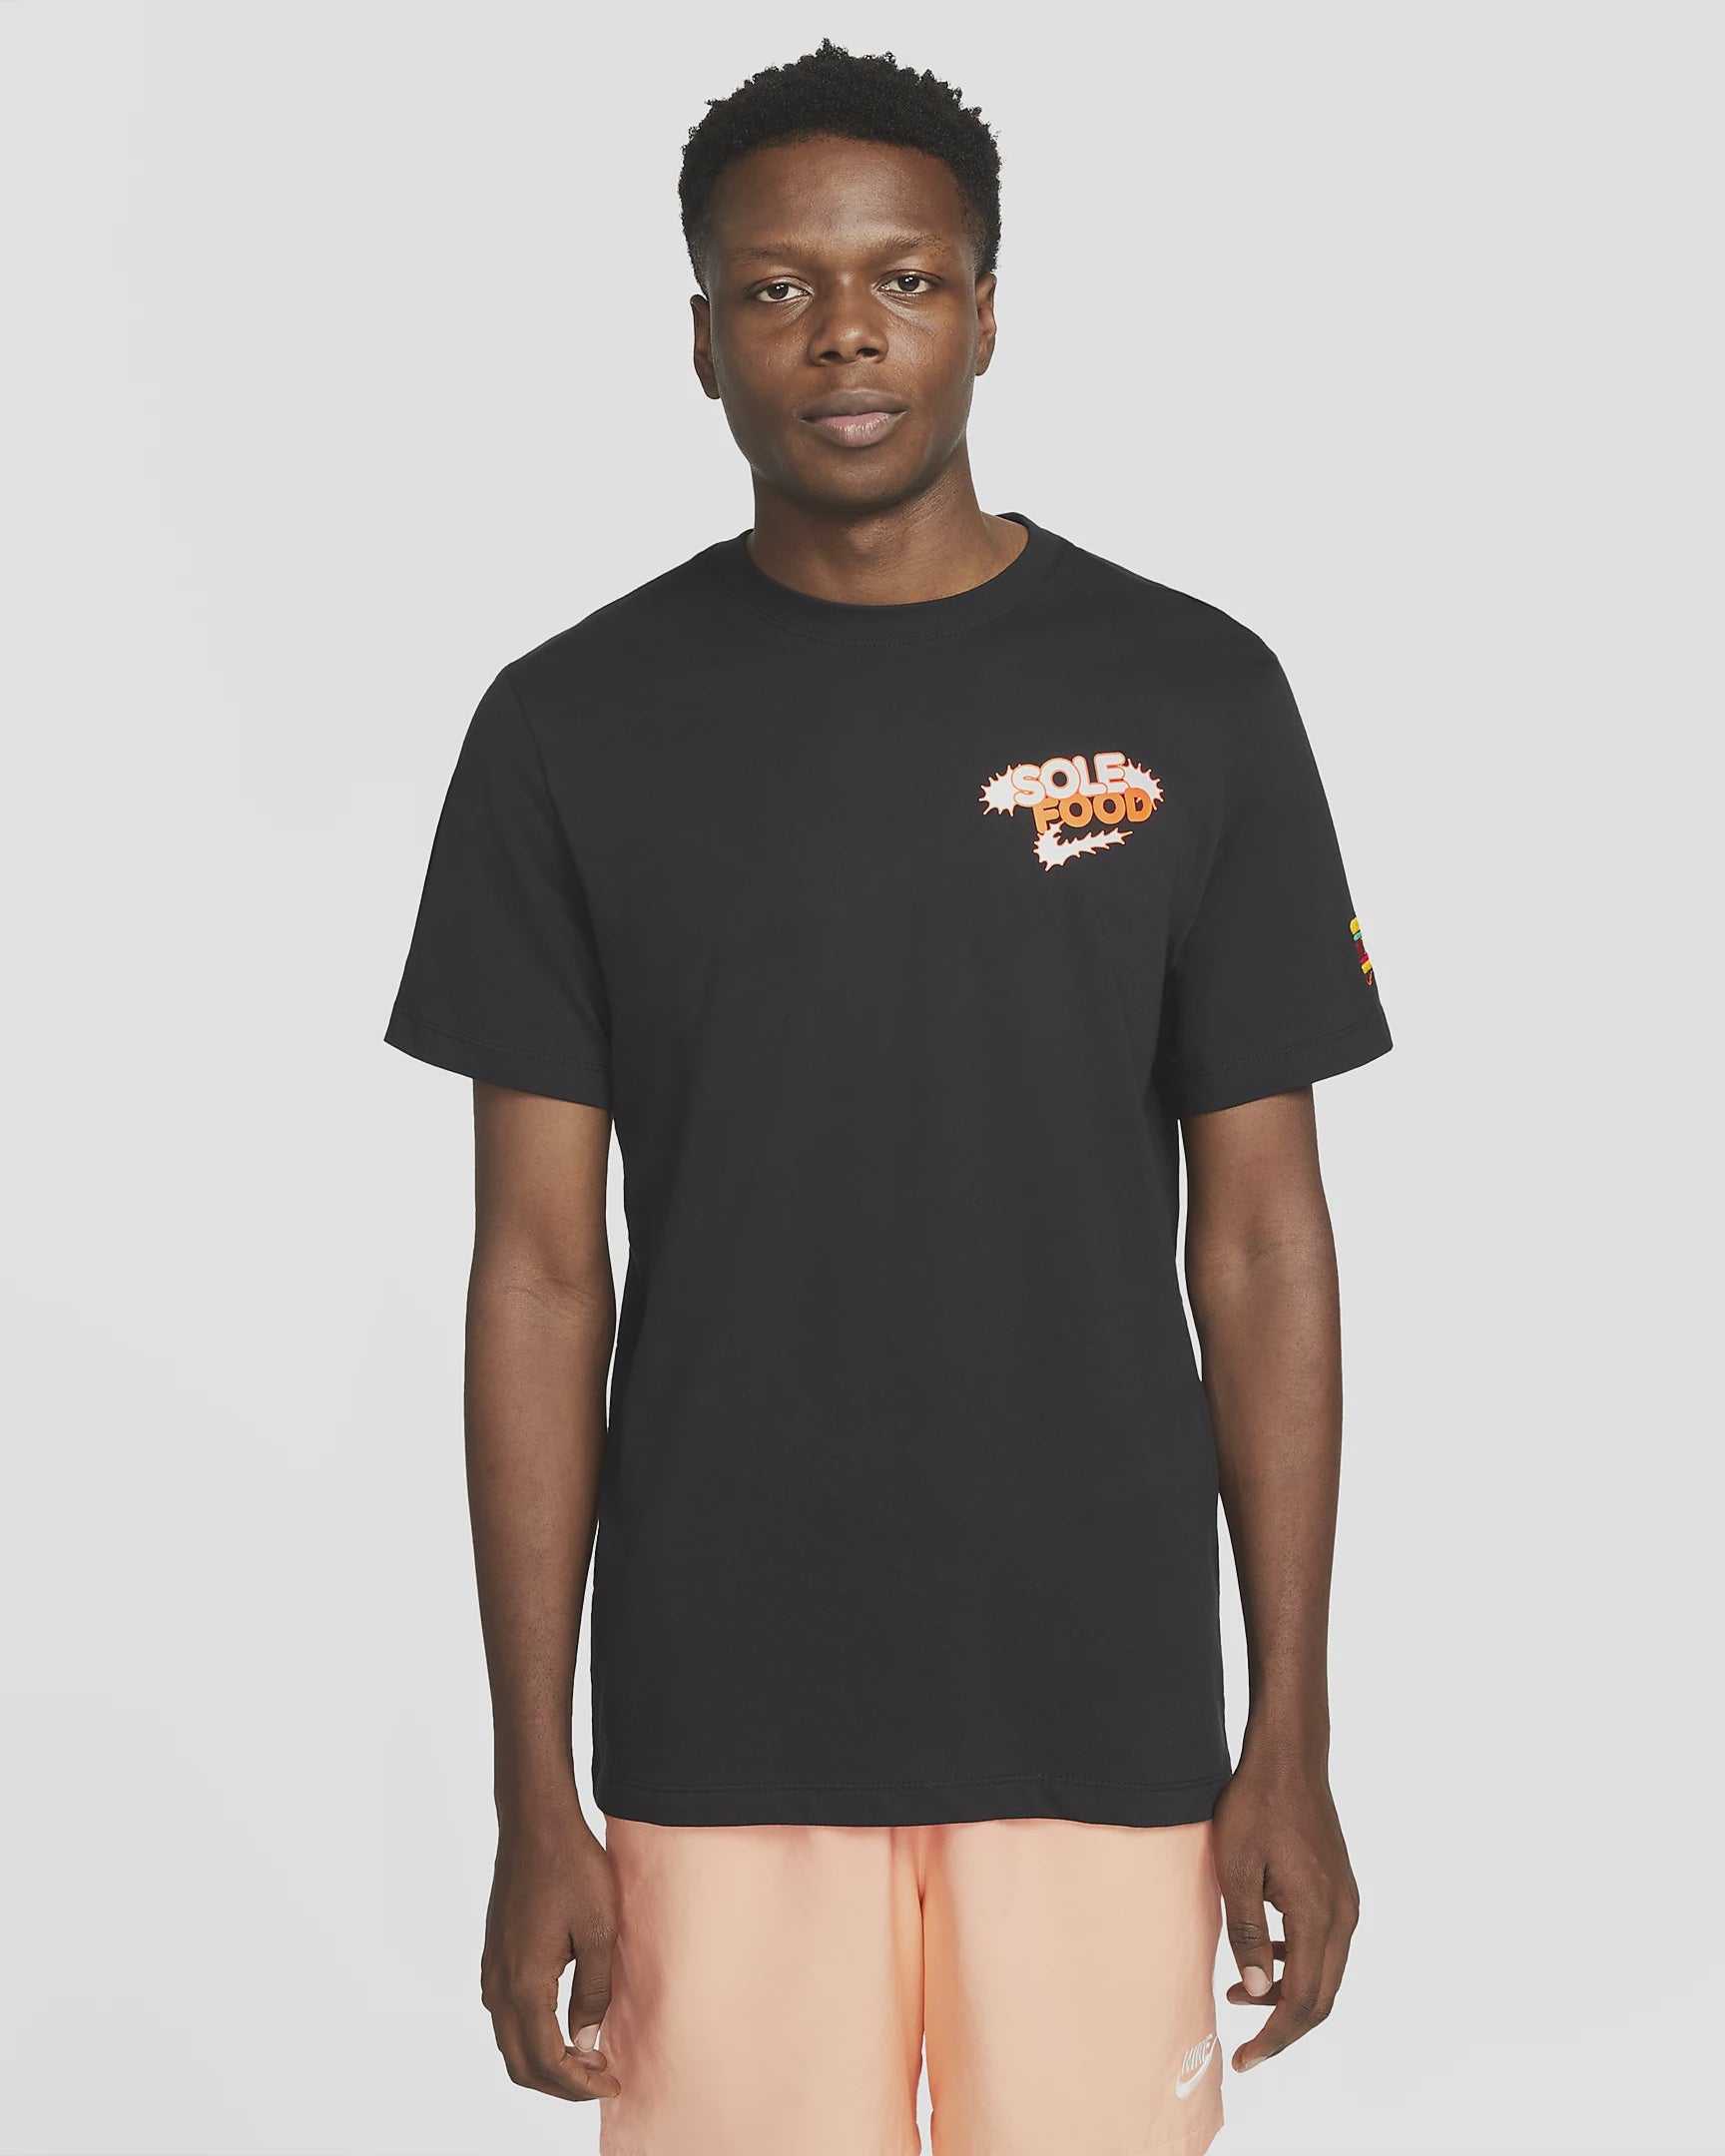 Nike Sportswear Black Sole Food T-Shirt